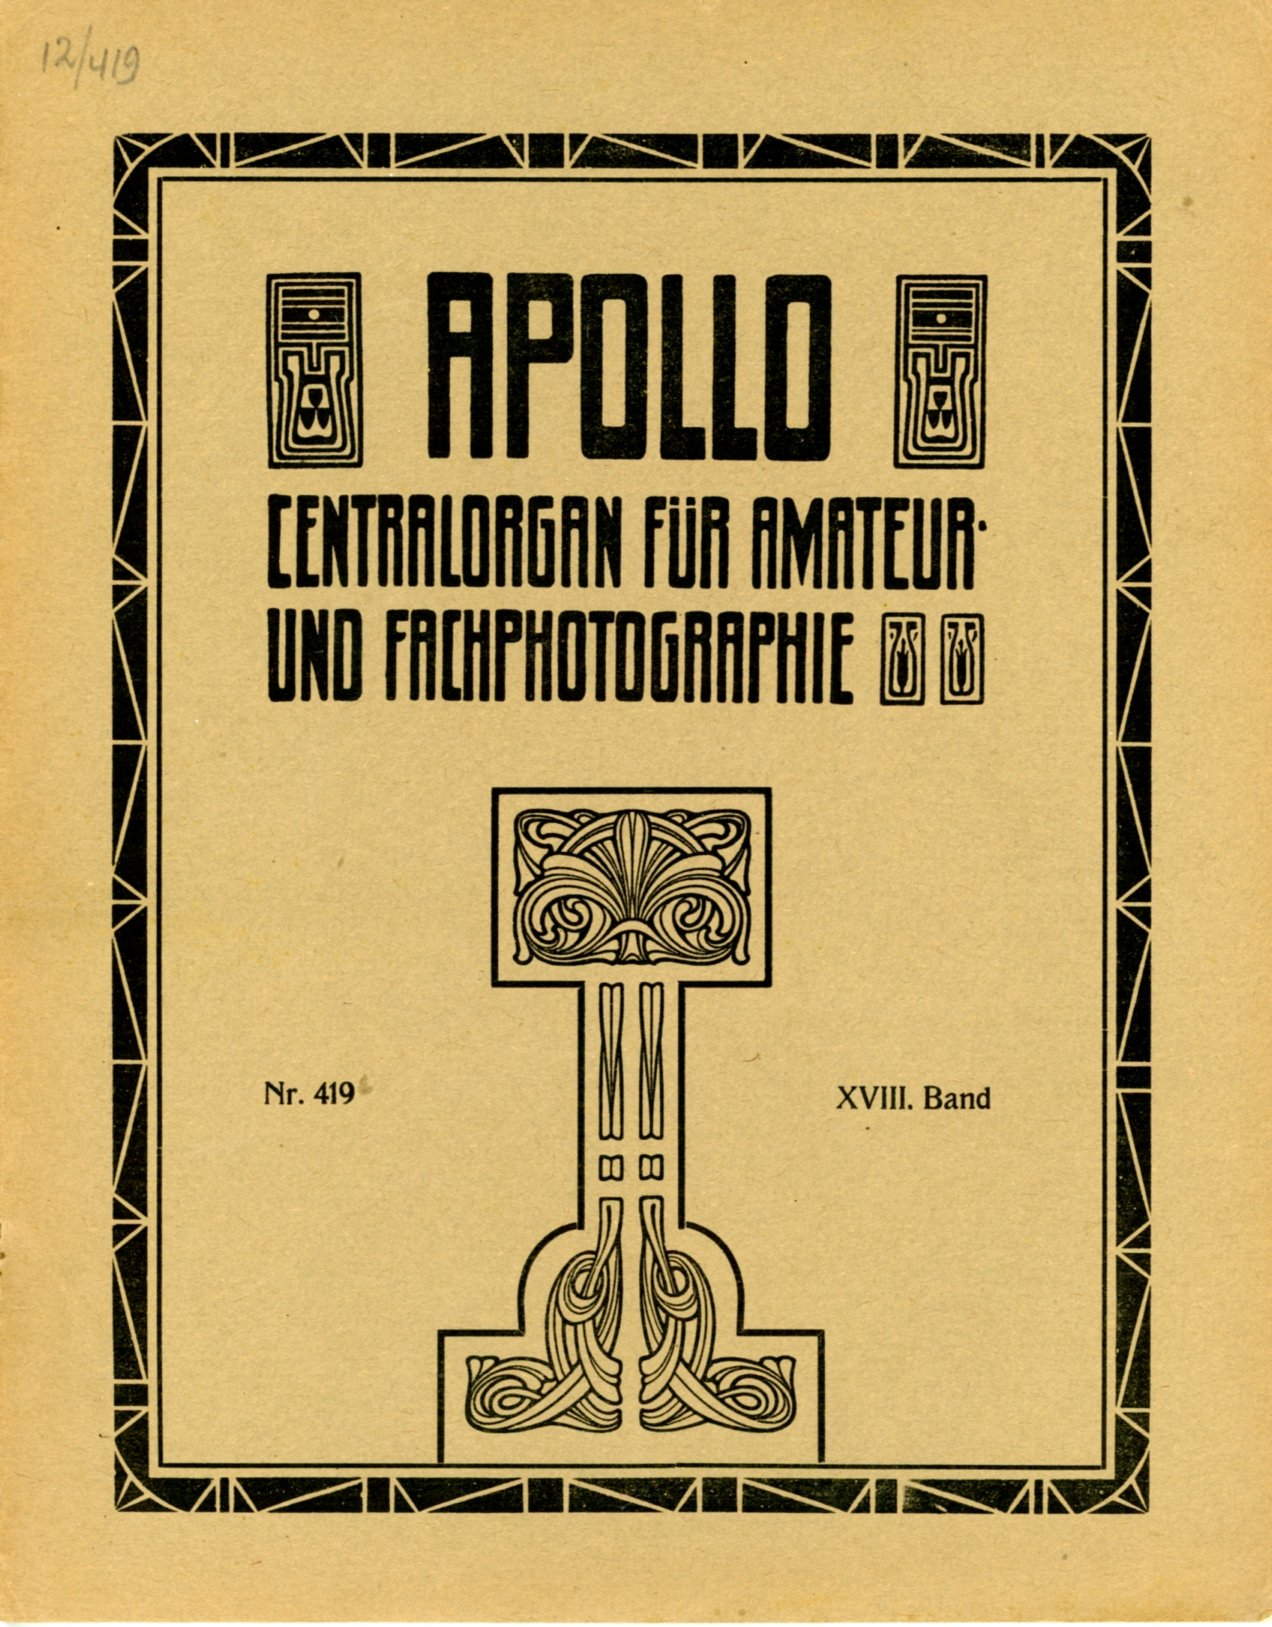 Журнал Apollo № 419, 8 dezember 1912 (Музей фотографії Київського національного університету технології та дизайну CC BY-NC-SA)